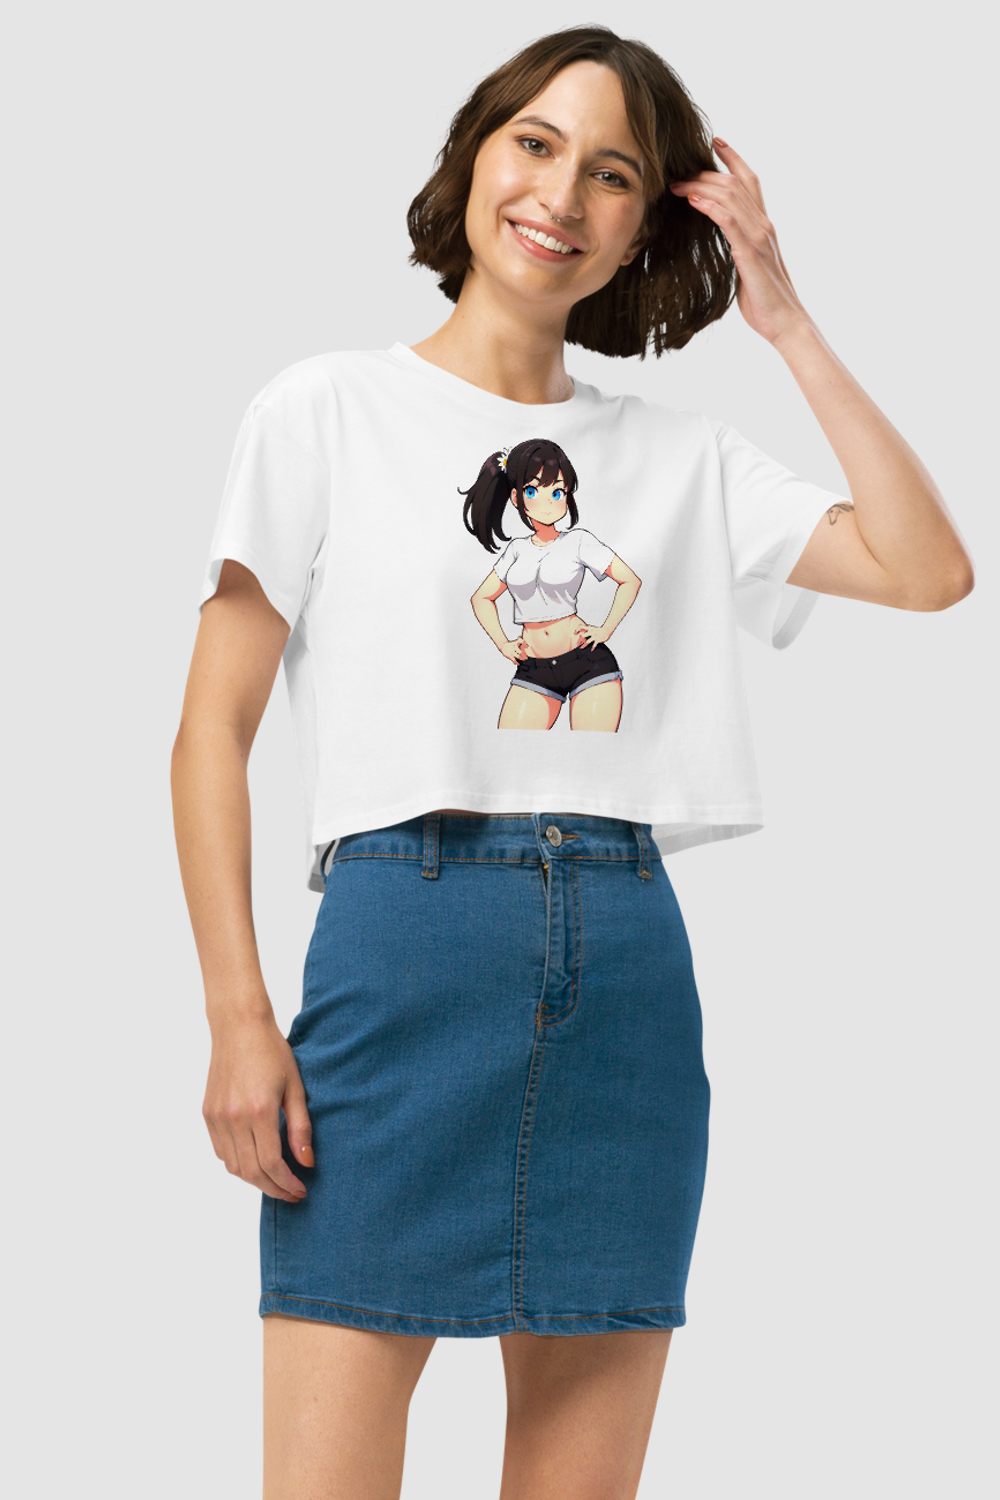 Too Kawaii For You Women's Relaxed Crop Top T-Shirt OniTakai